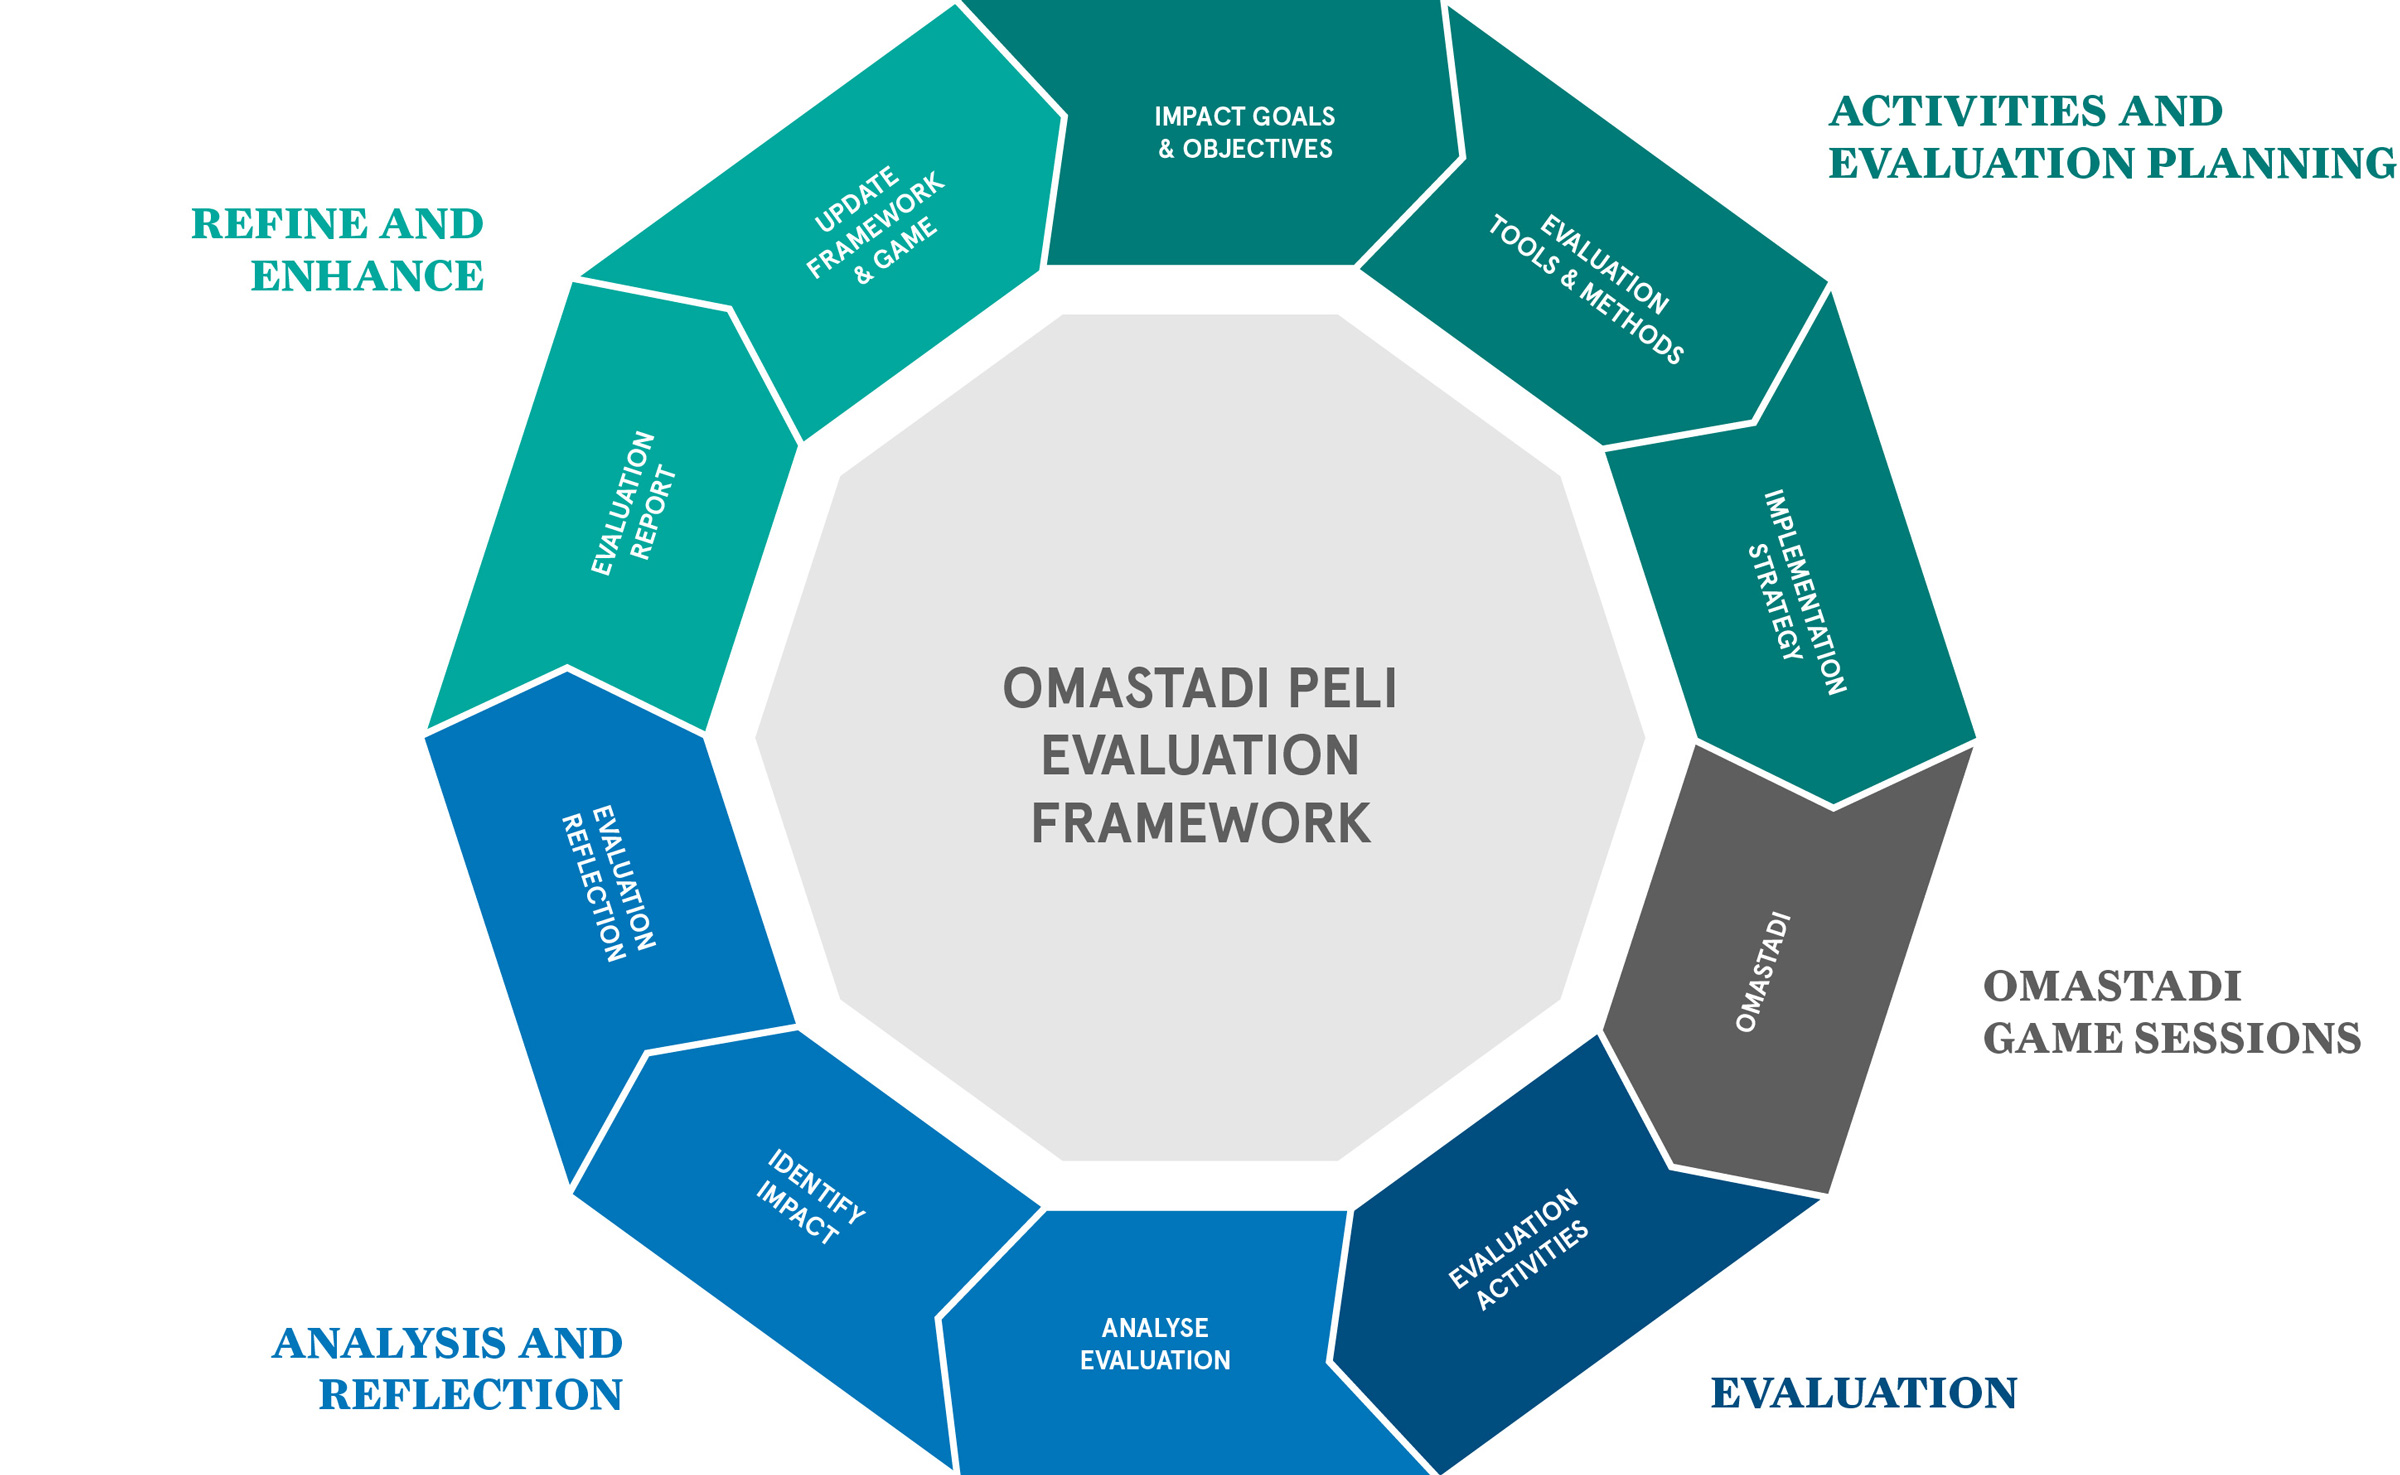 Case OmaStadi - Evaluation Framework